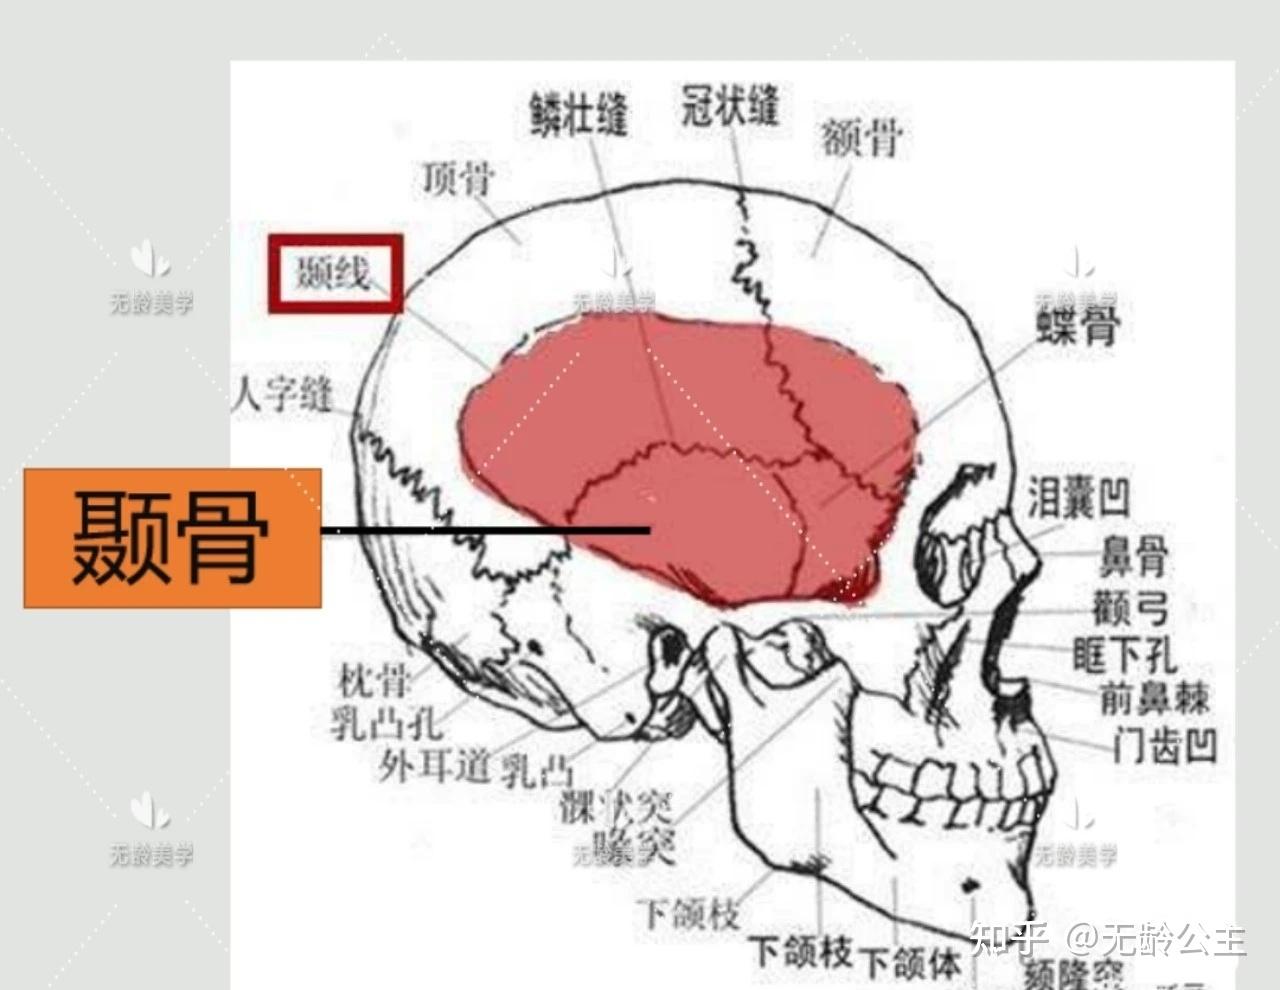 额骨的解剖-MedSci.cn